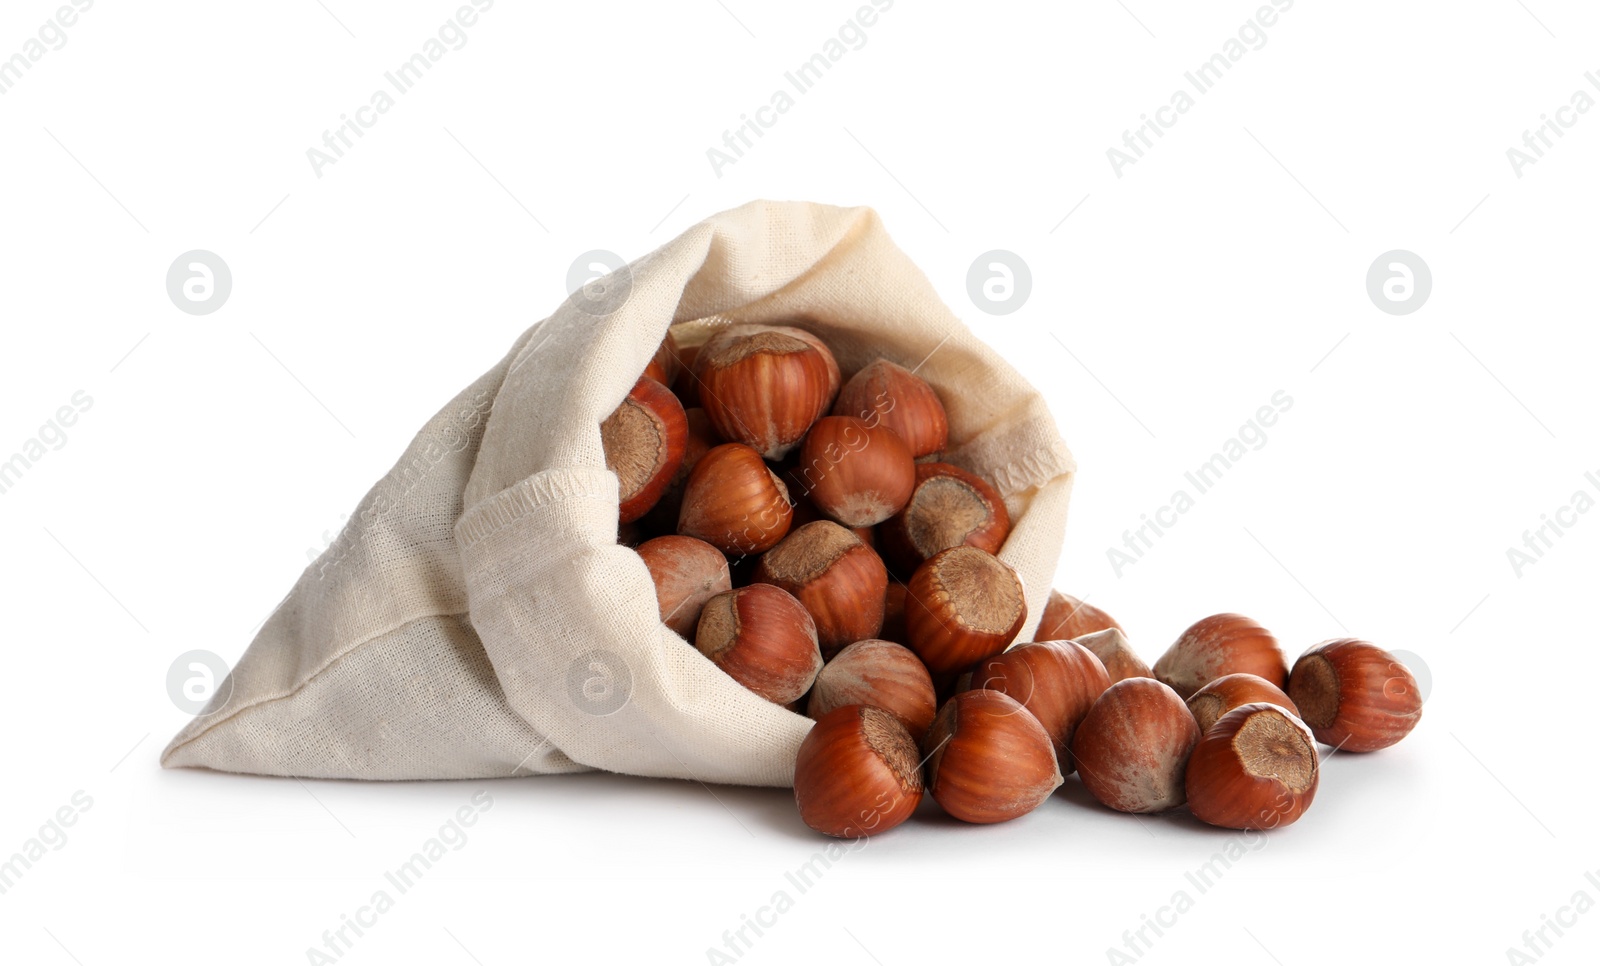 Photo of Overturned sack with tasty organic hazelnuts on white background